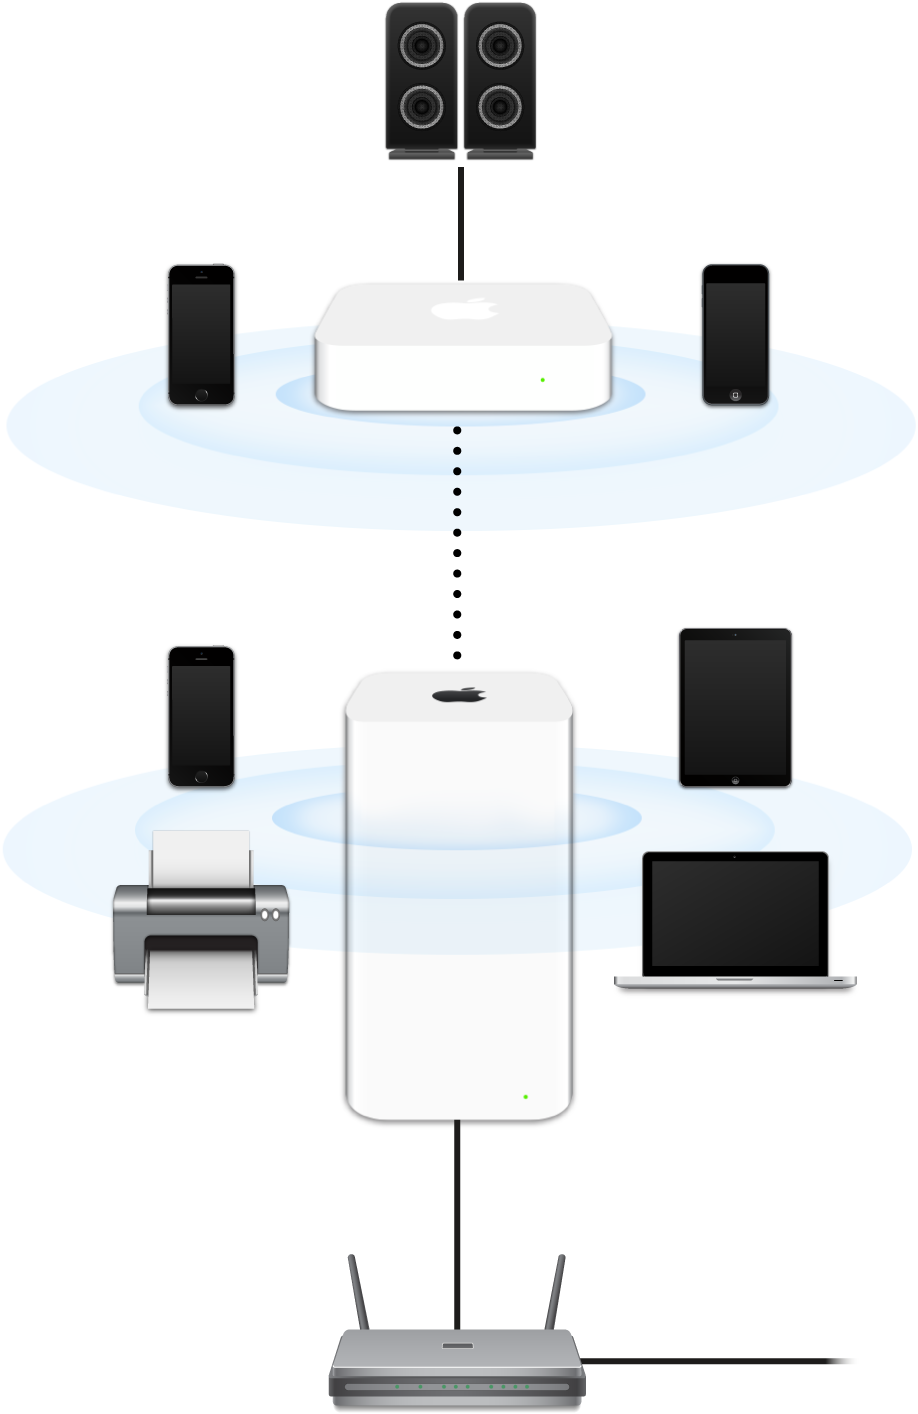 Ein erweitertes Netzwerk mit einer AirPort Extreme- und einer AirPort Express-Basisstation, die mit einem Modem verbunden sind und das Signal an unterschiedliche Geräte übertragen